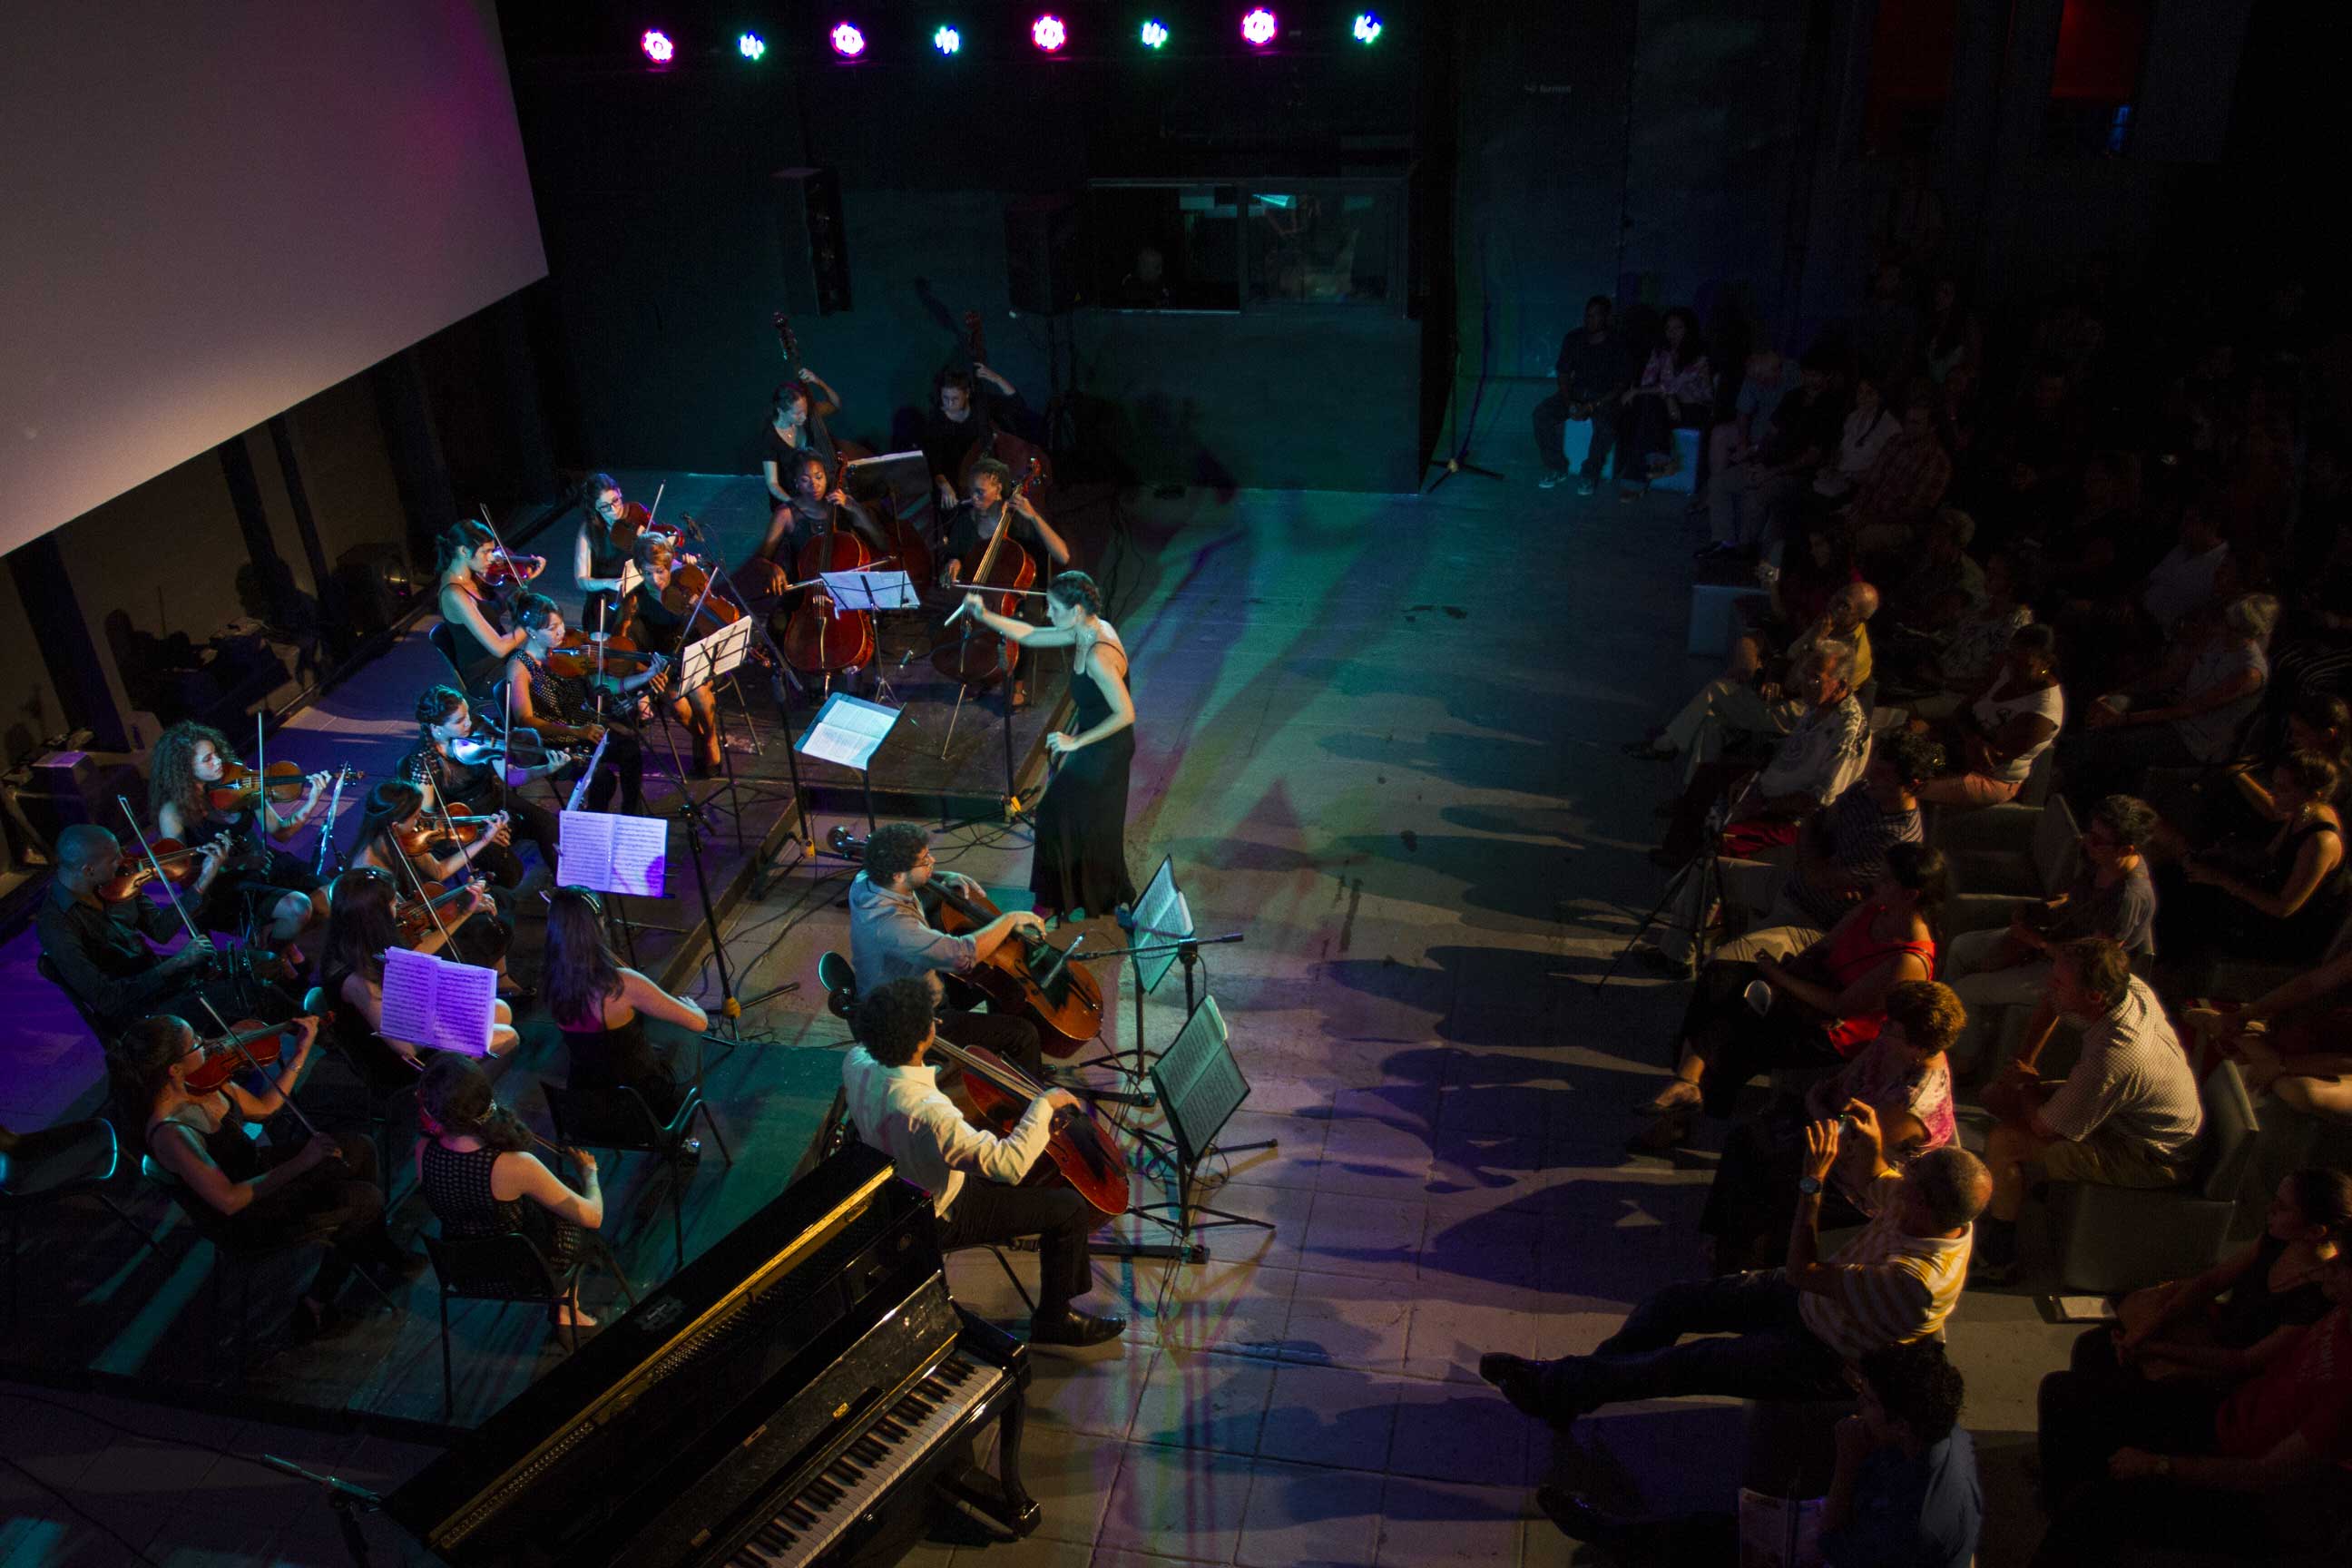 Concierto de música de cámara a cargo de la Orquesta de Cámara de La Habana, dirigida por Daiana García. Foto: Danay Nápoles.